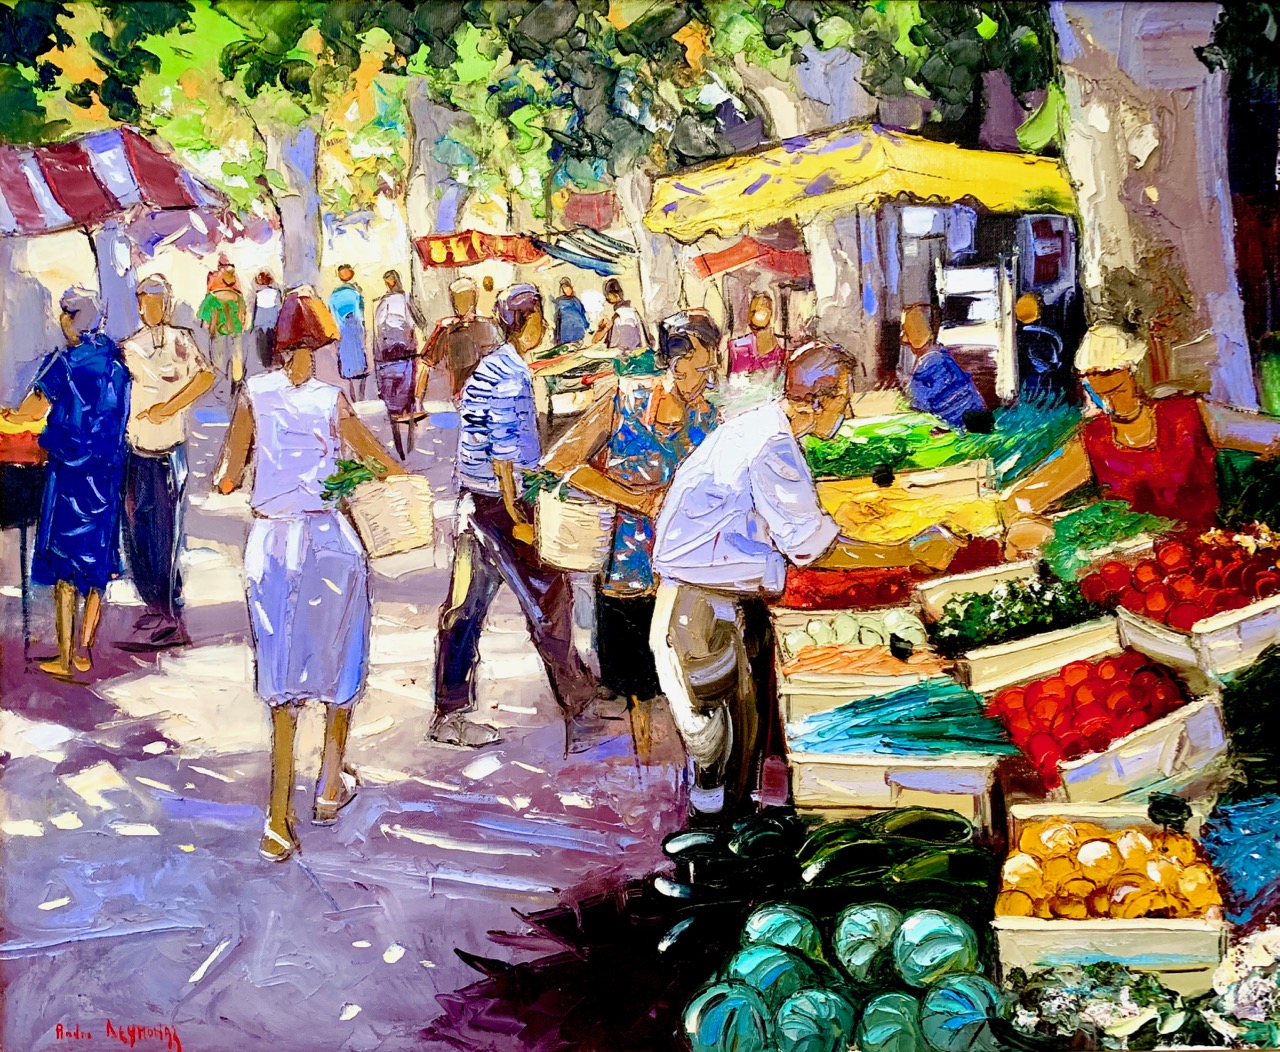 Aix-en-Provence market day